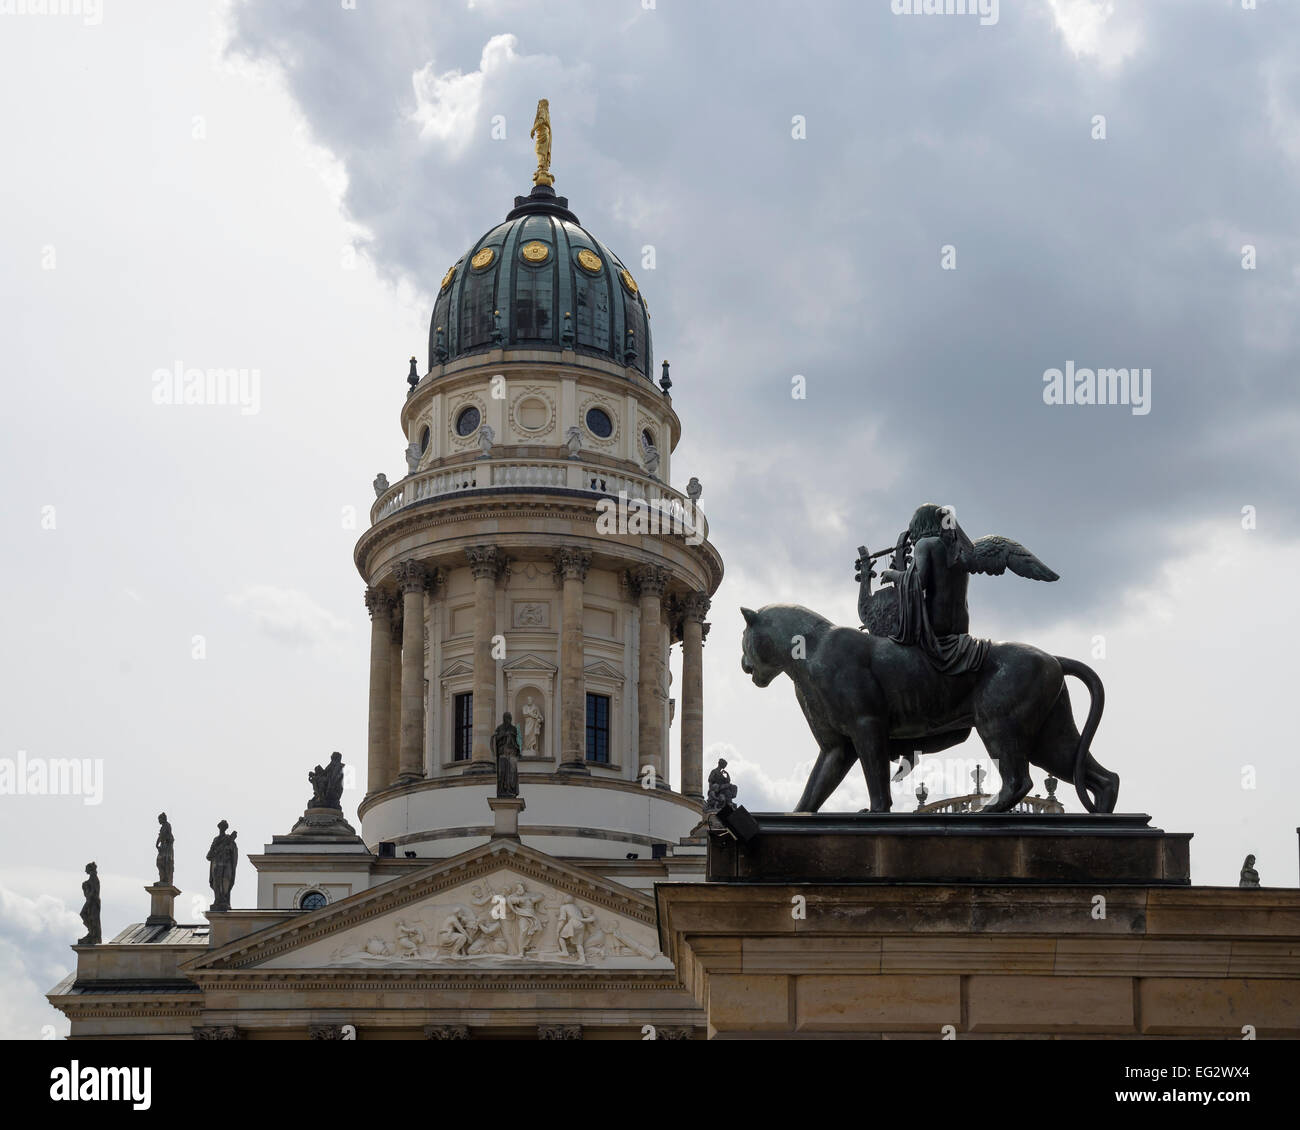 Composition architecturale avec la sculpture et la coupole de l'Église allemande, Berlin, capitale de l'Allemagne, l'Europe. Banque D'Images